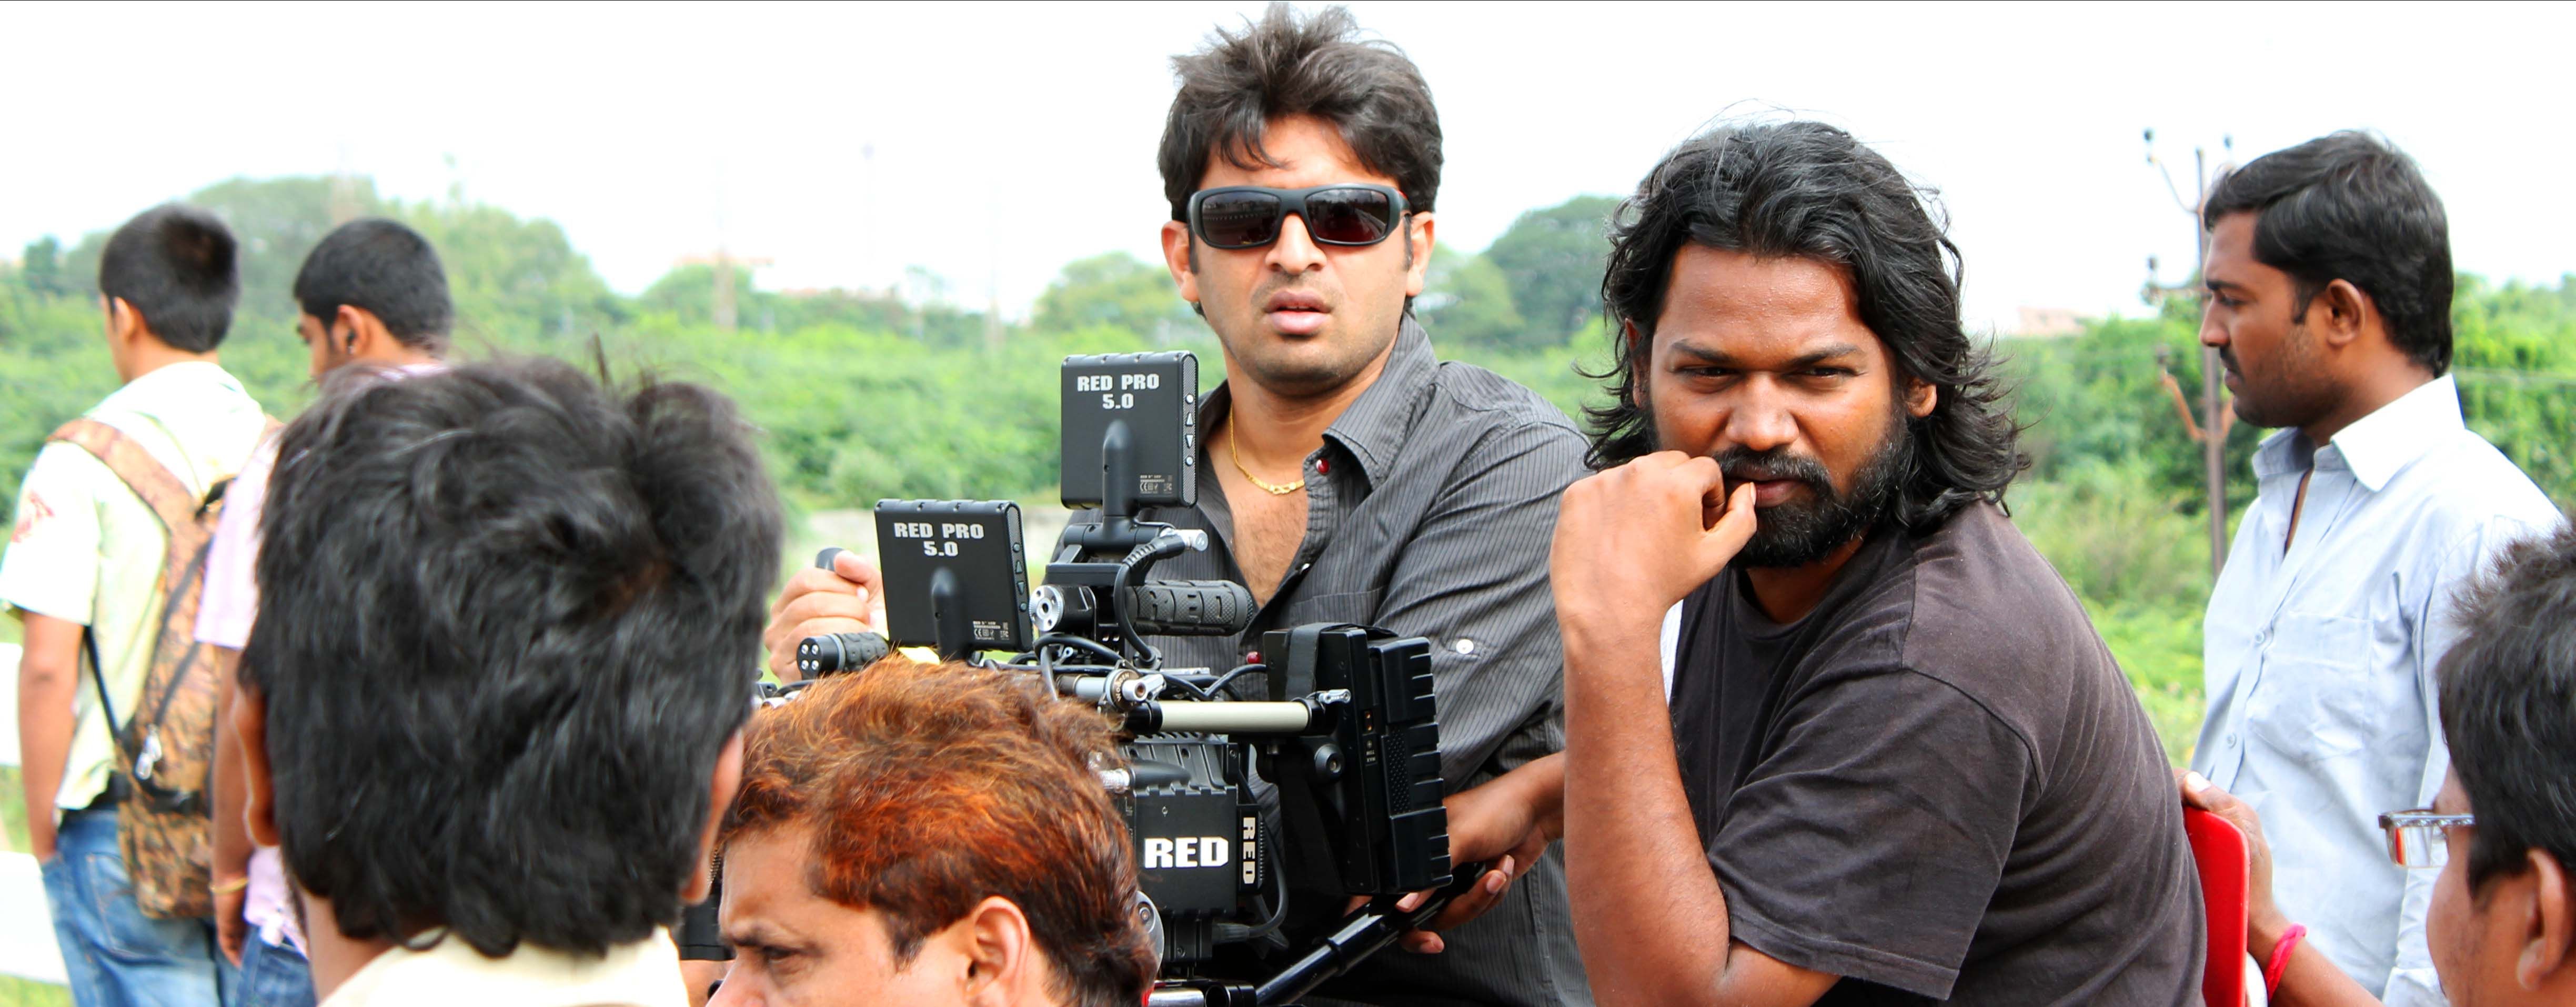 Swamy Ra Ra Movie Working Stills | Picture 281987